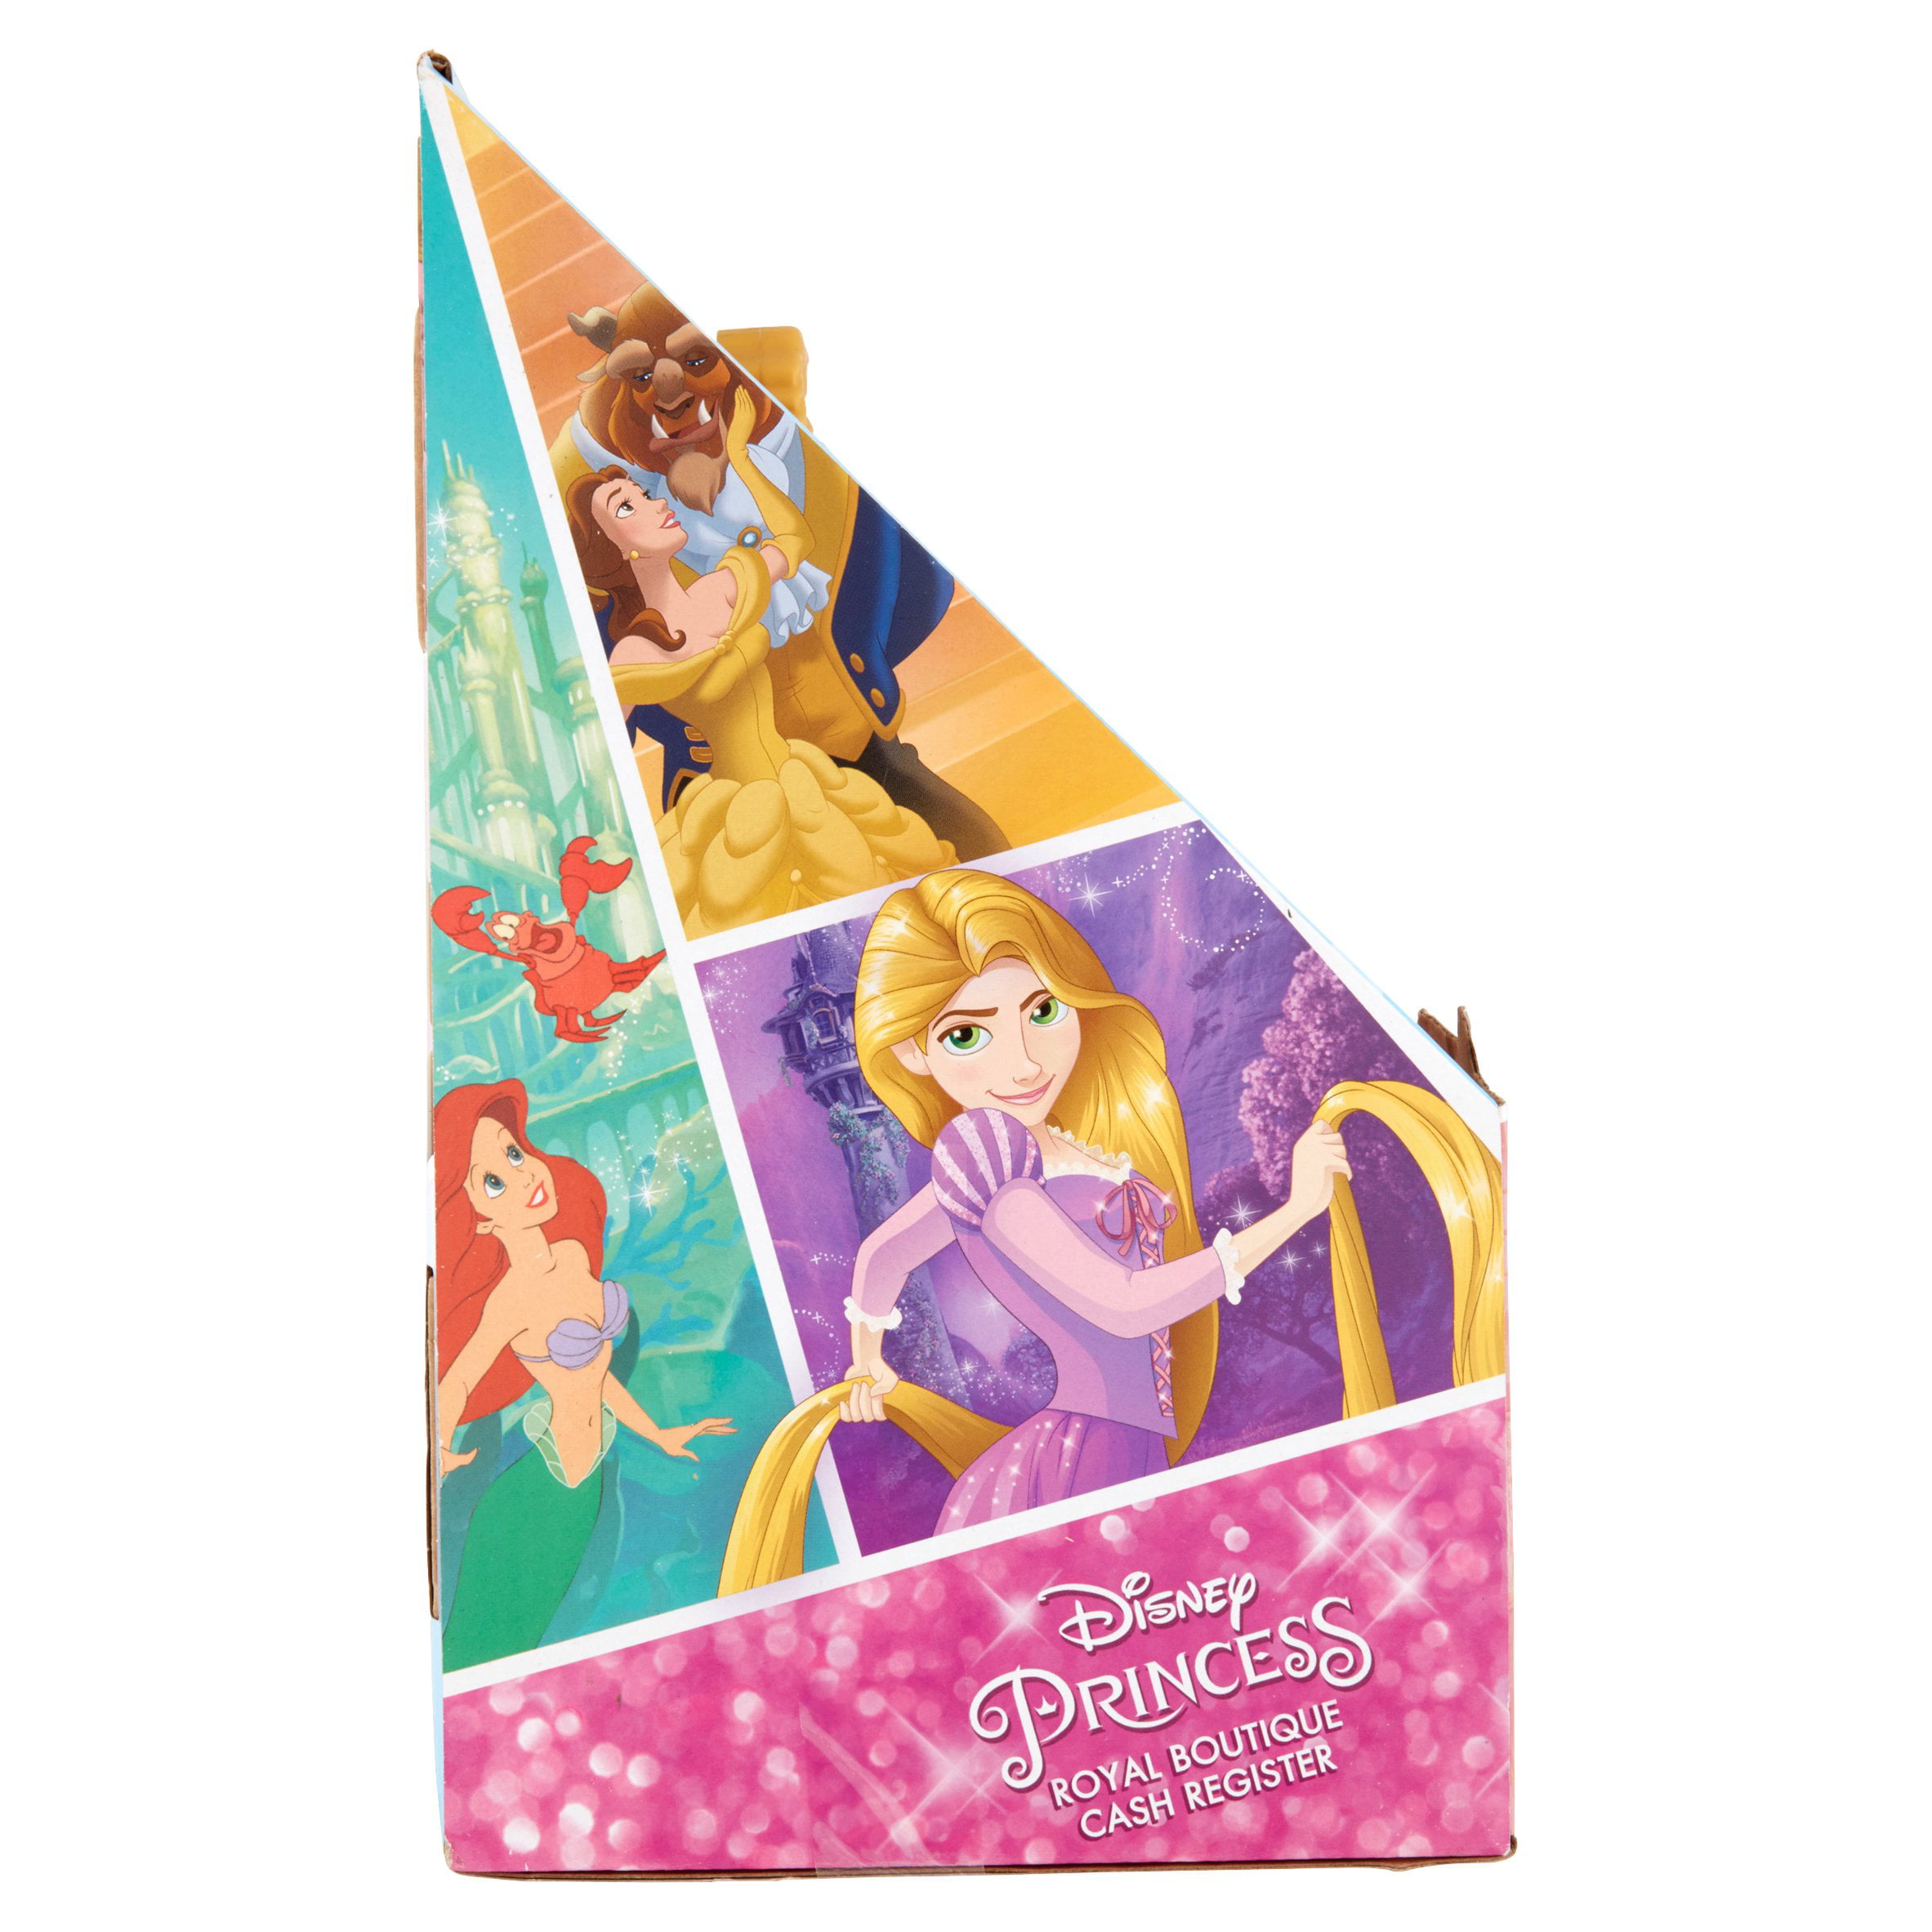 Disney Princess Royal Boutique Cash Register No Box